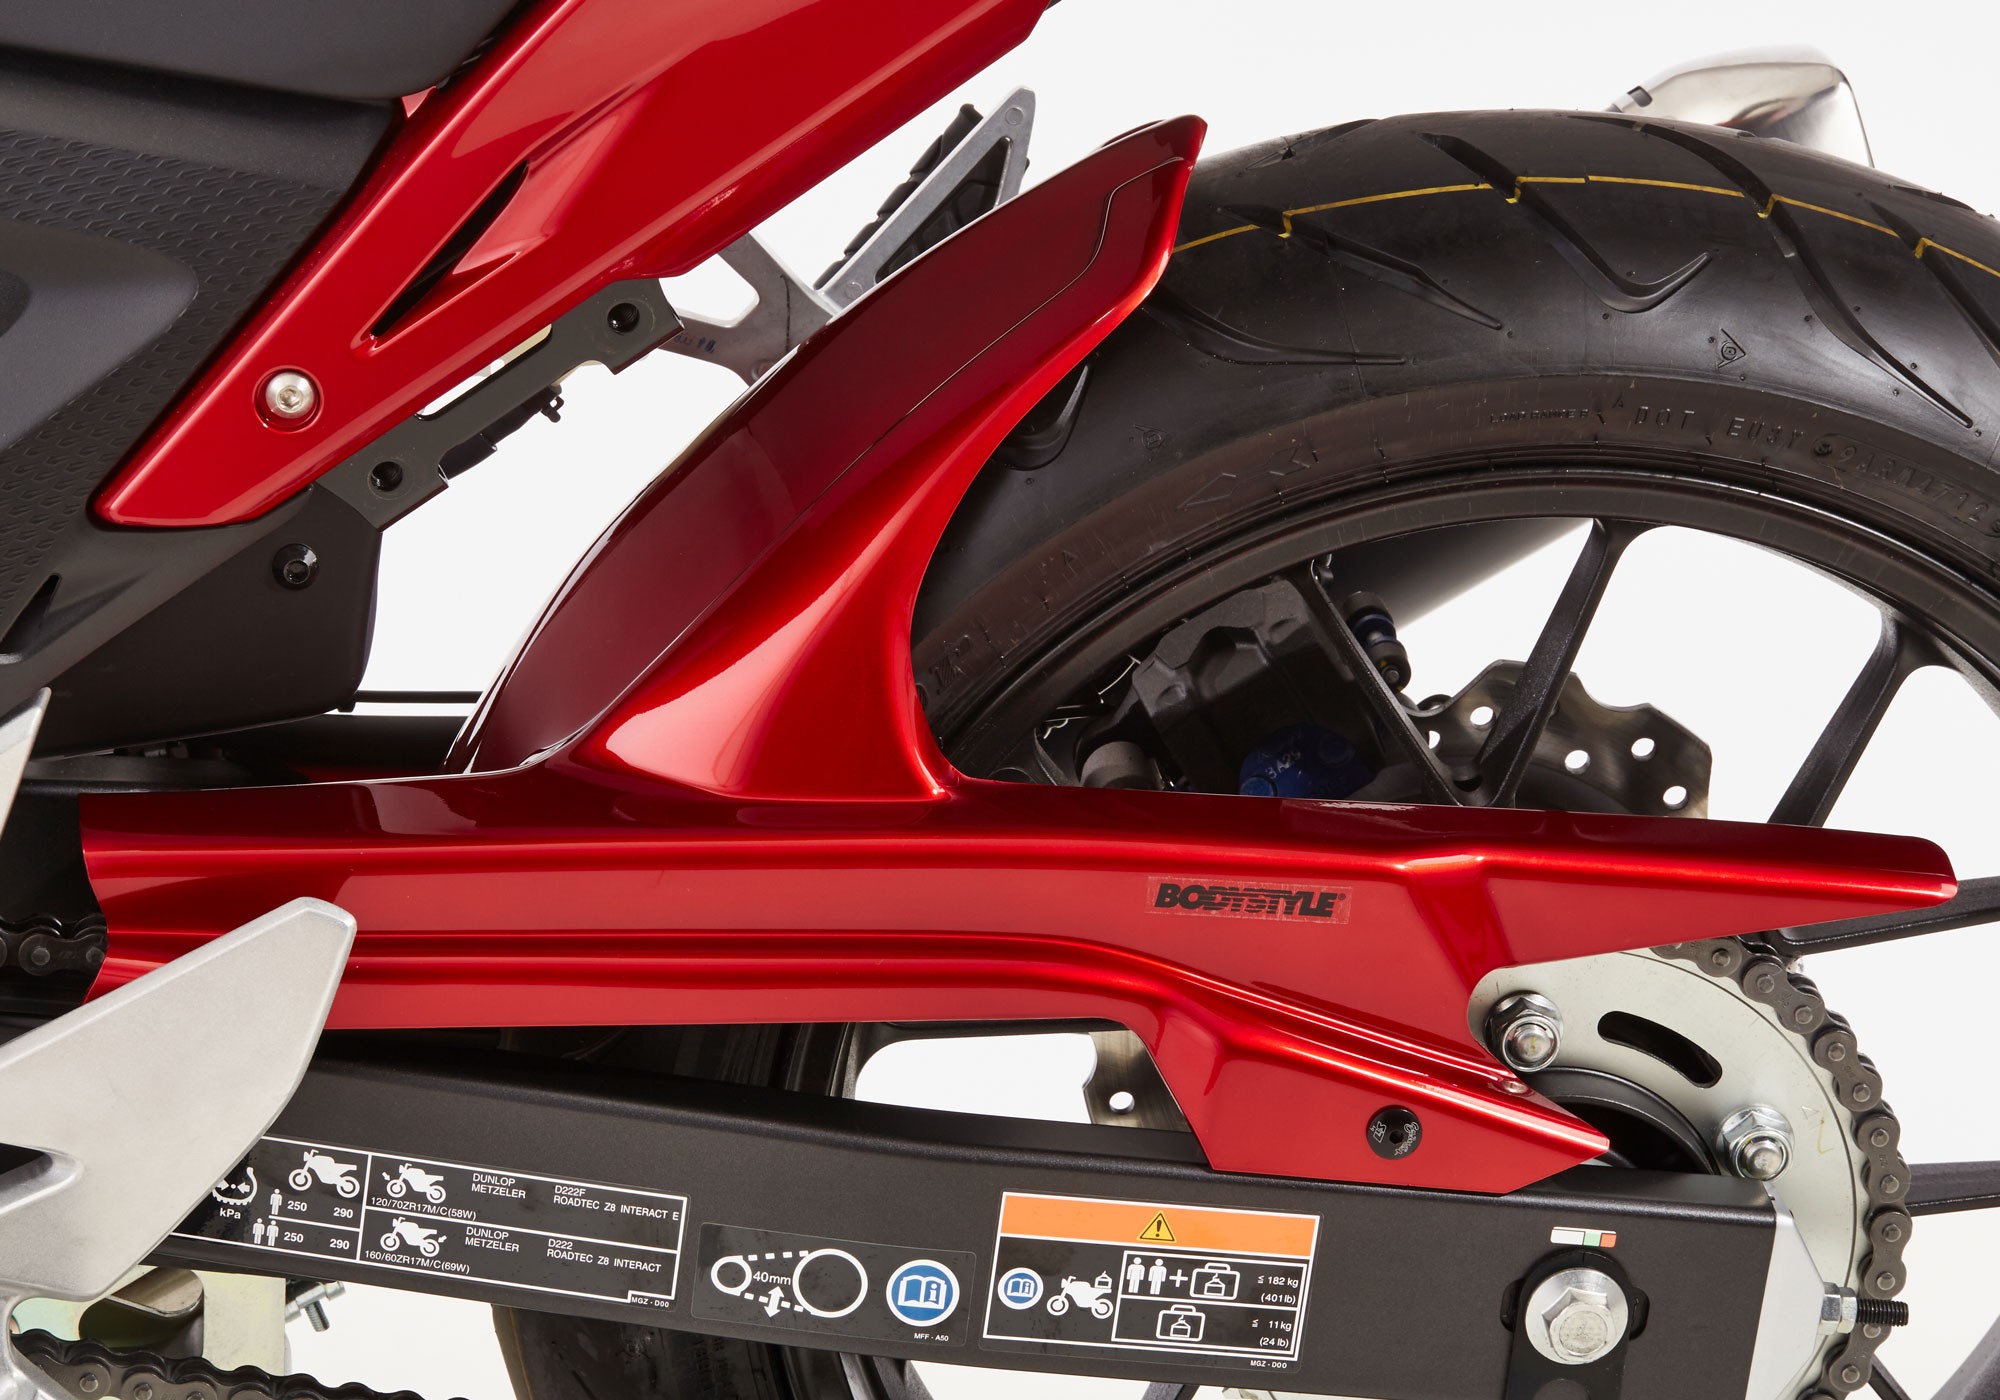 BODYSTYLE Sportsline Hinterradabdeckung rot Millenium Red, R263 ABE passt für Honda CBR500R, CB500F & X